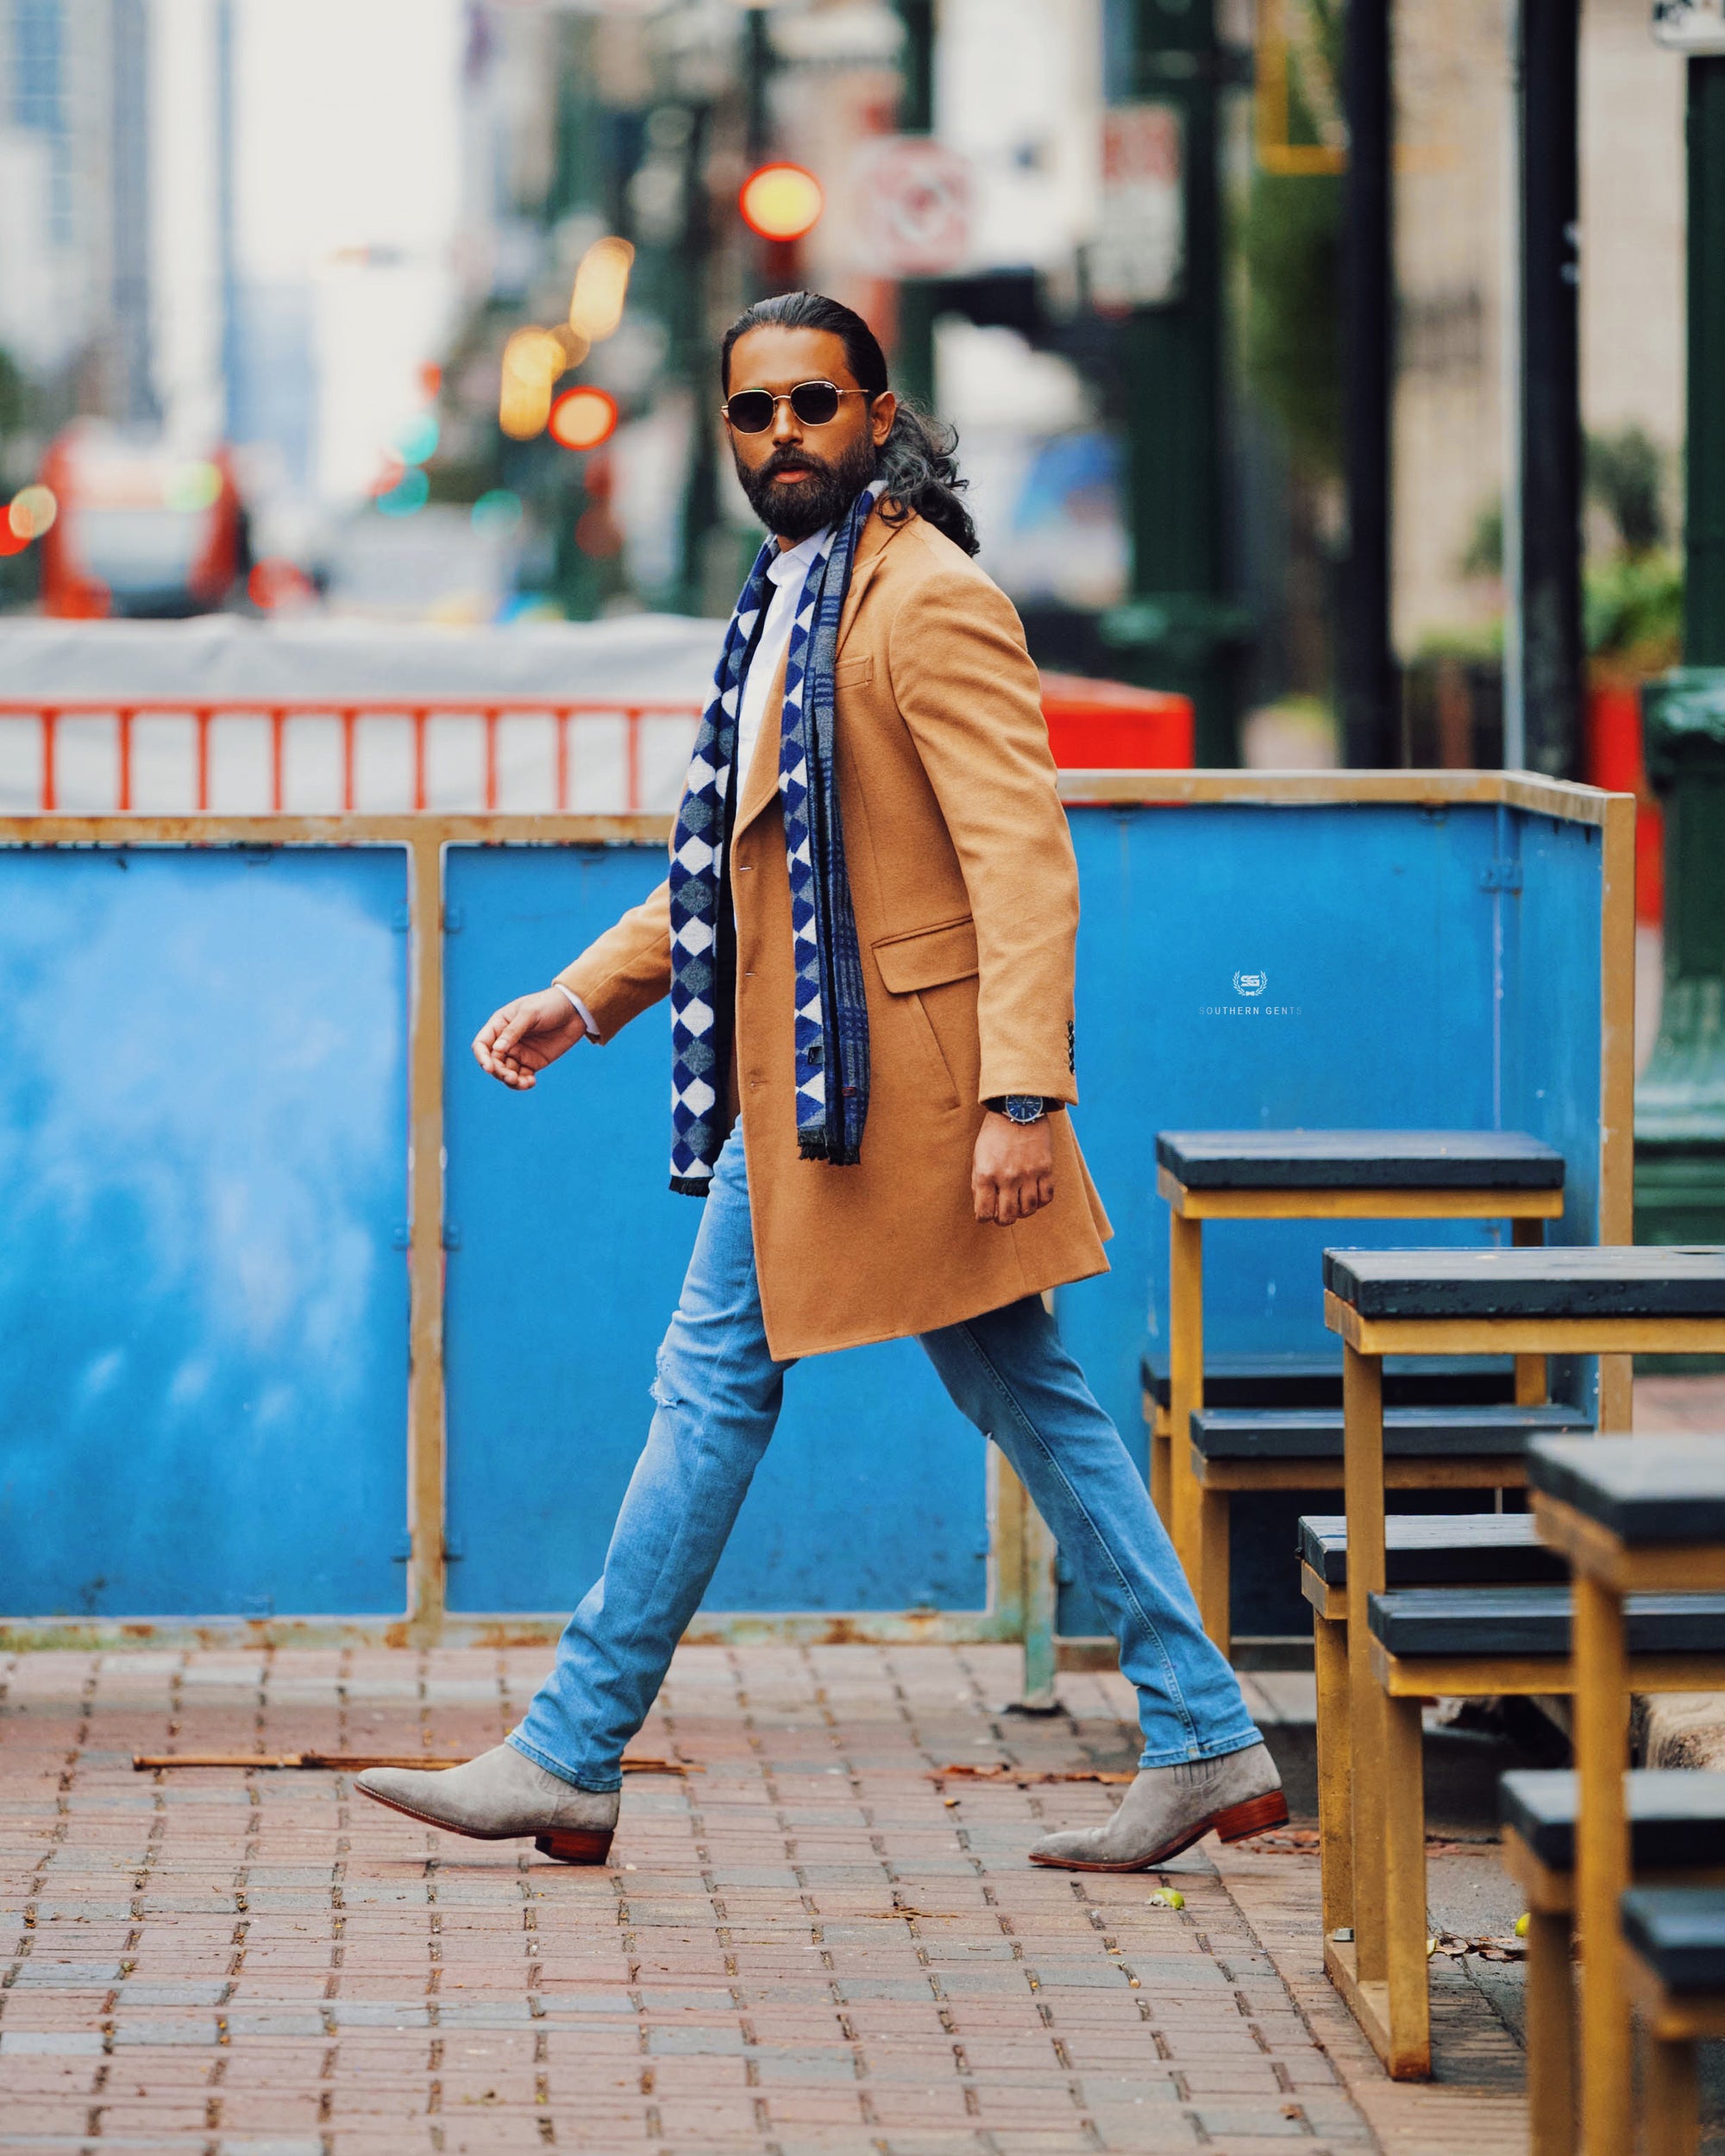 Men's Outerwear: Men's Jackets & Coats